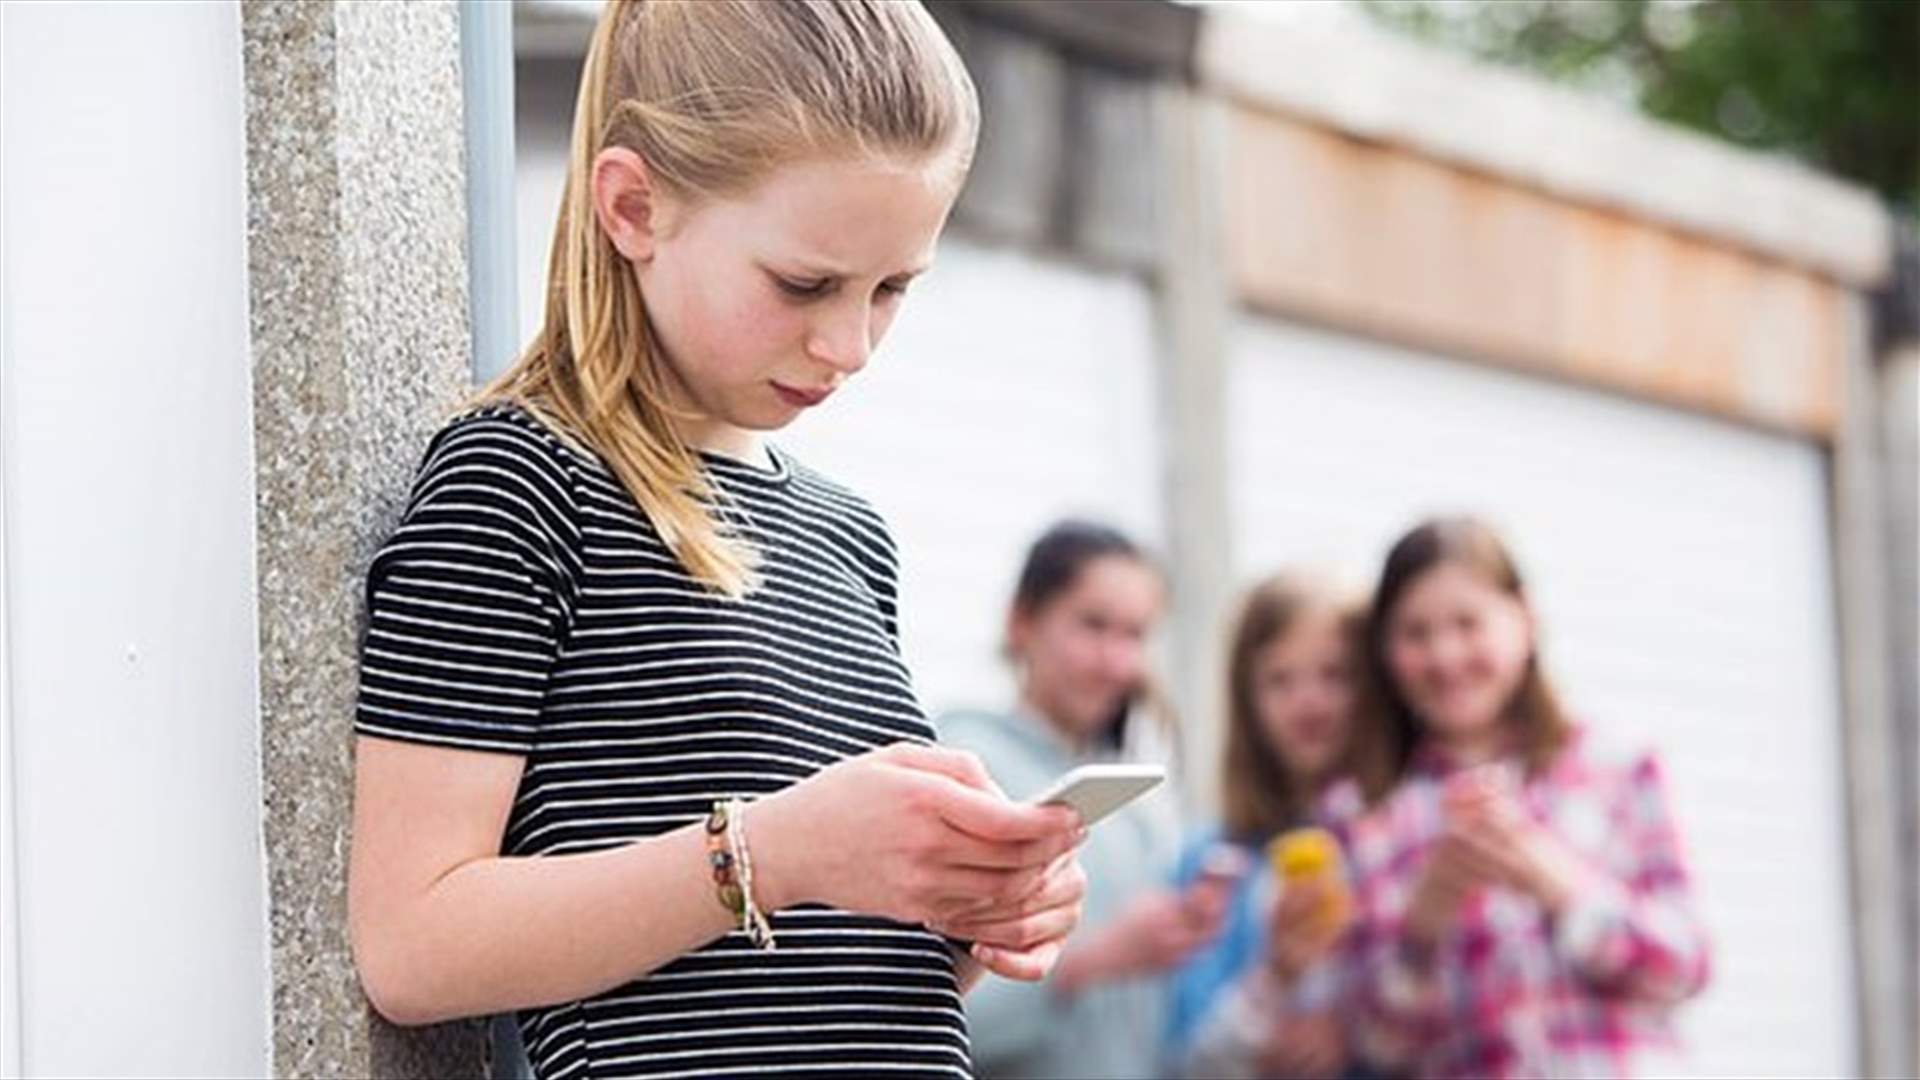 دراسة عن المراهقين تدق ناقوس الخطر... كيف تؤثر مواقع التواصل الاجتماعي عليهم؟